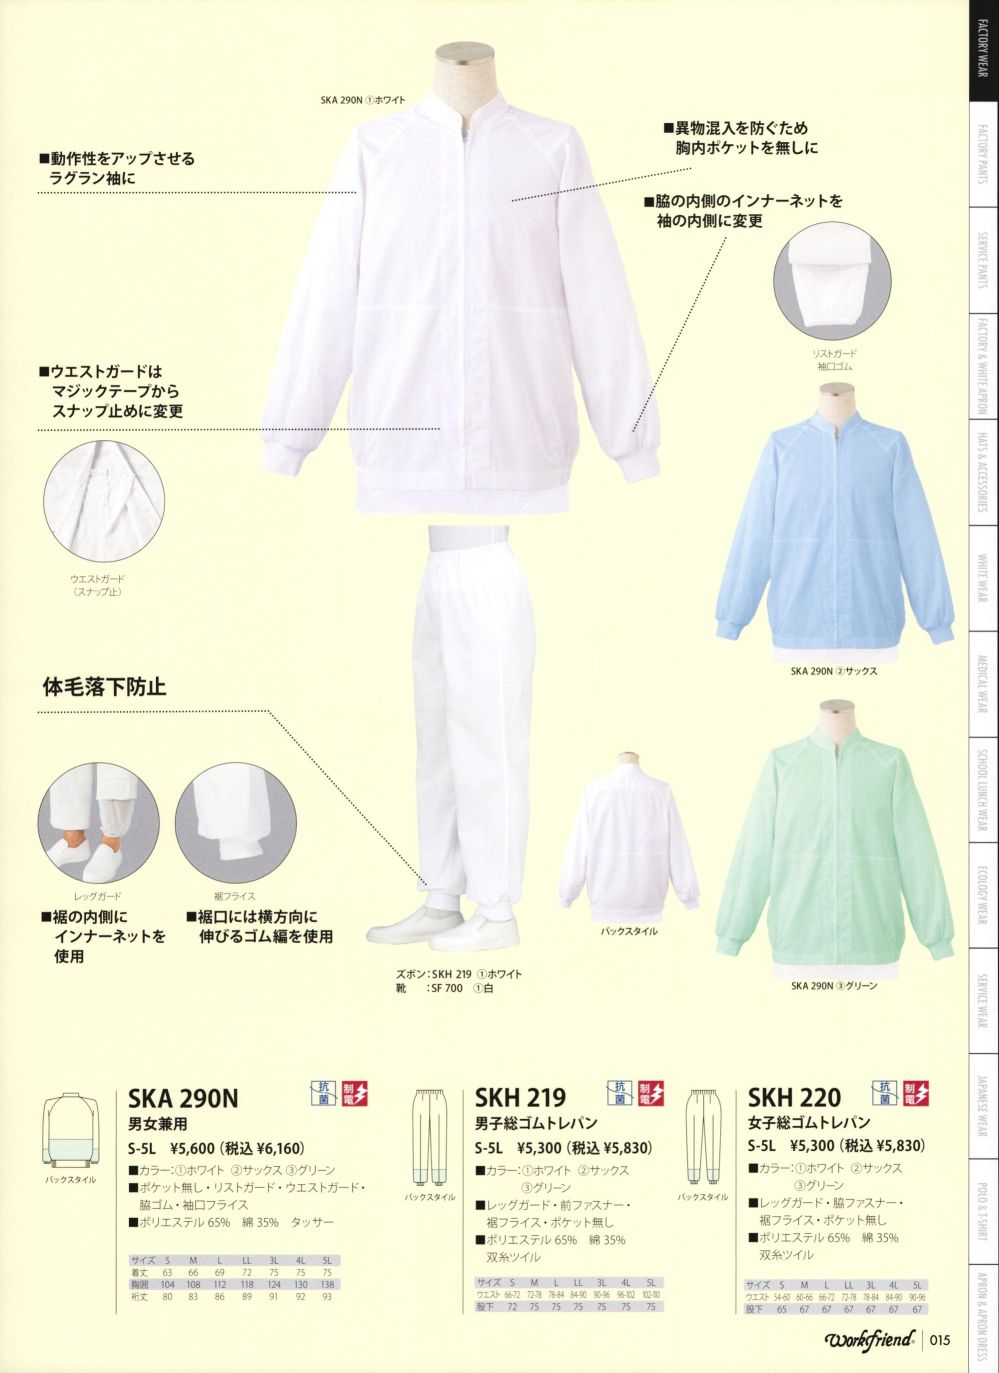 ユニフォーム1 サカノ繊維の長袖白衣 SKA290N